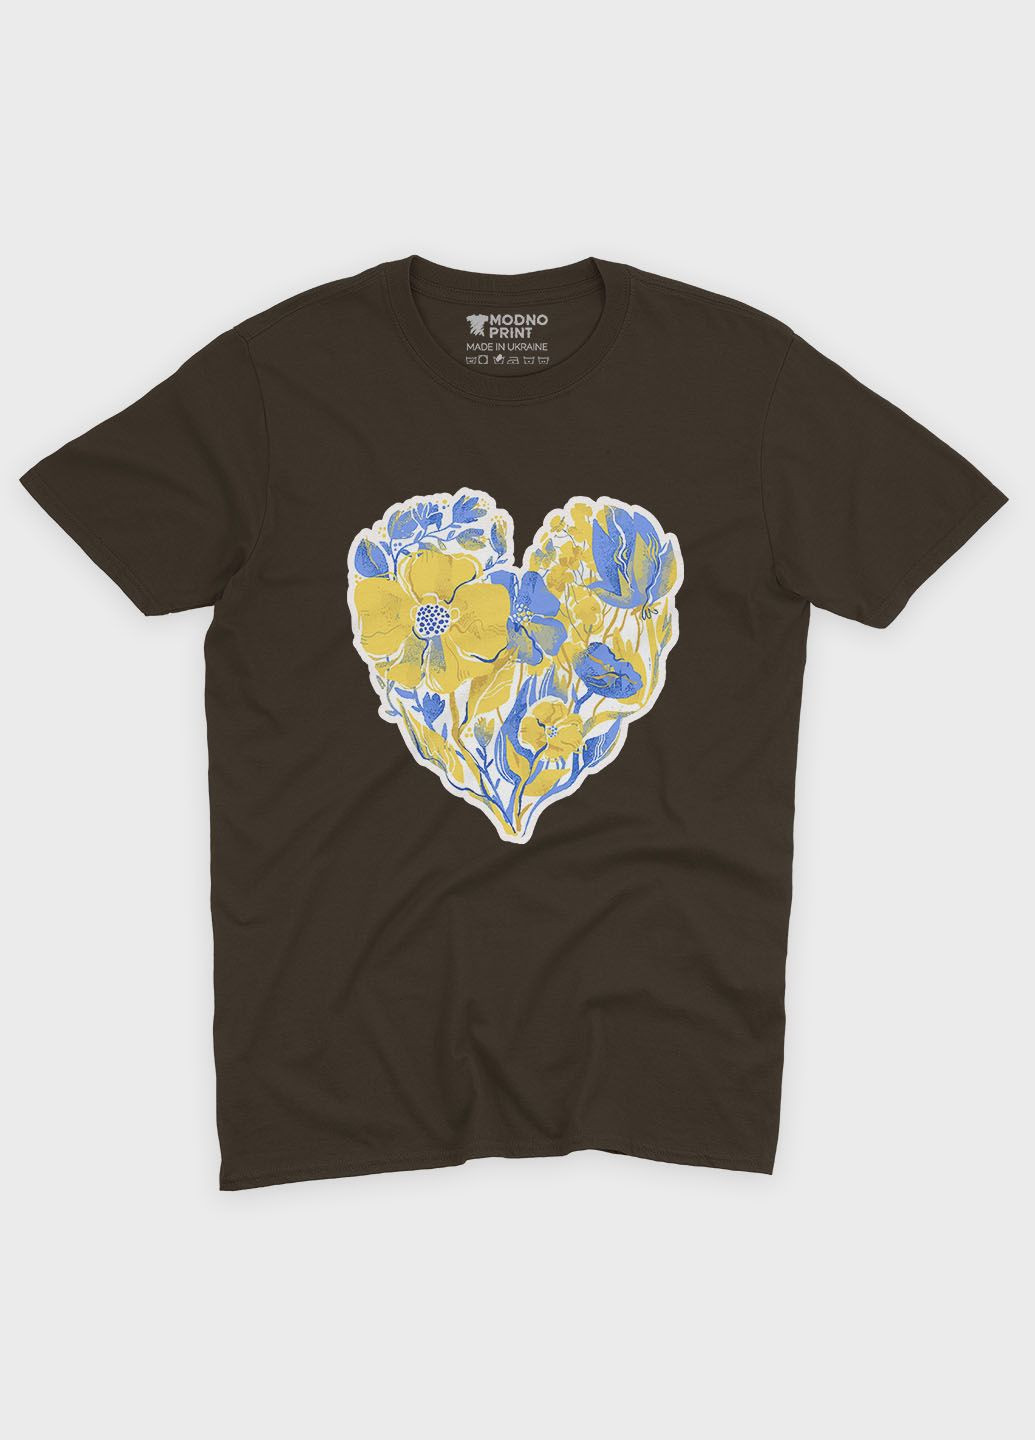 Коричневая мужская футболка с патриотическим принтом сердце (ts001-4-dch-005-1-103) Modno